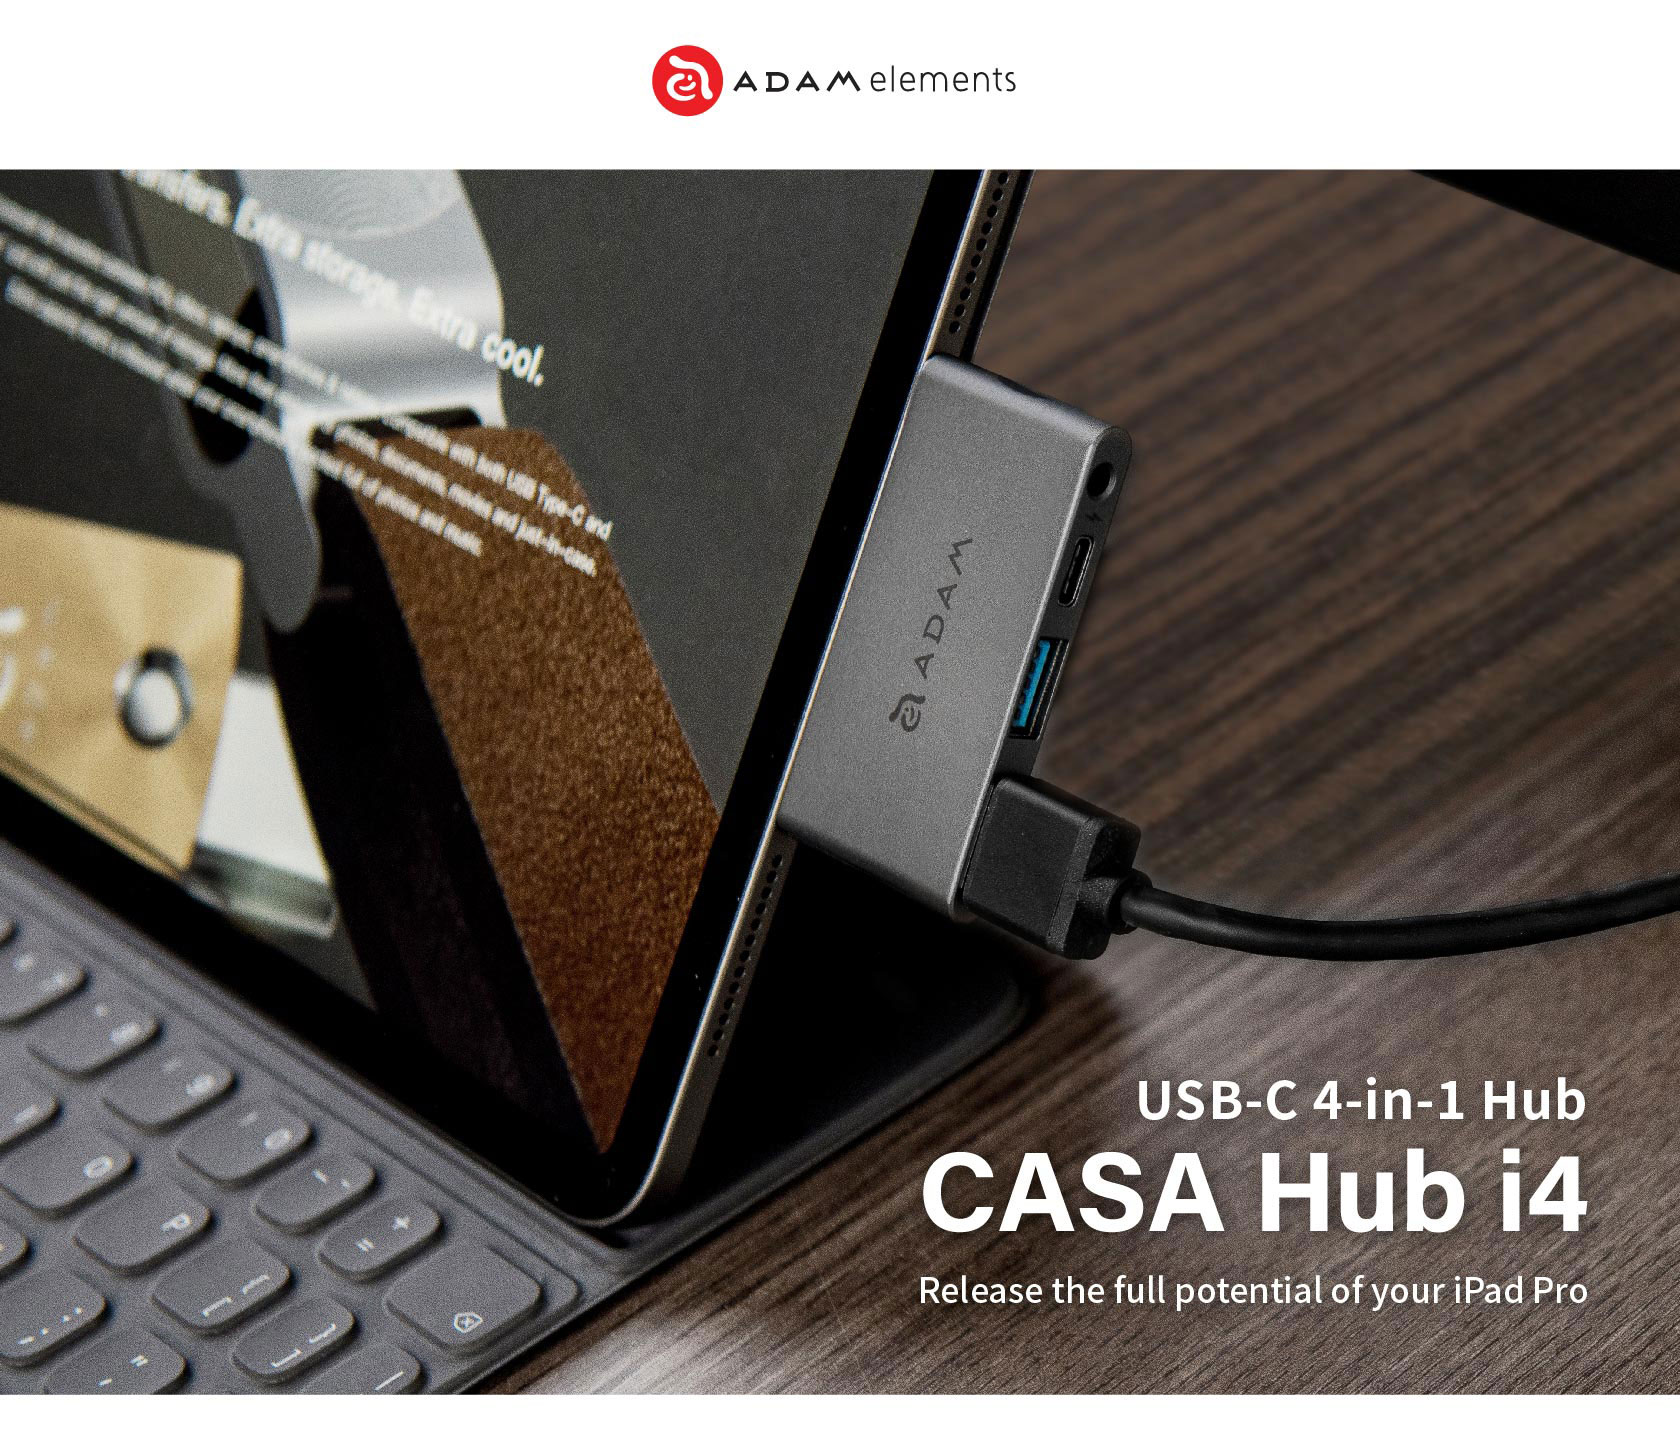 CASA Hub i4 USB 3.1 USB Type C USB C 4 Port Hub for iPad Pro 1